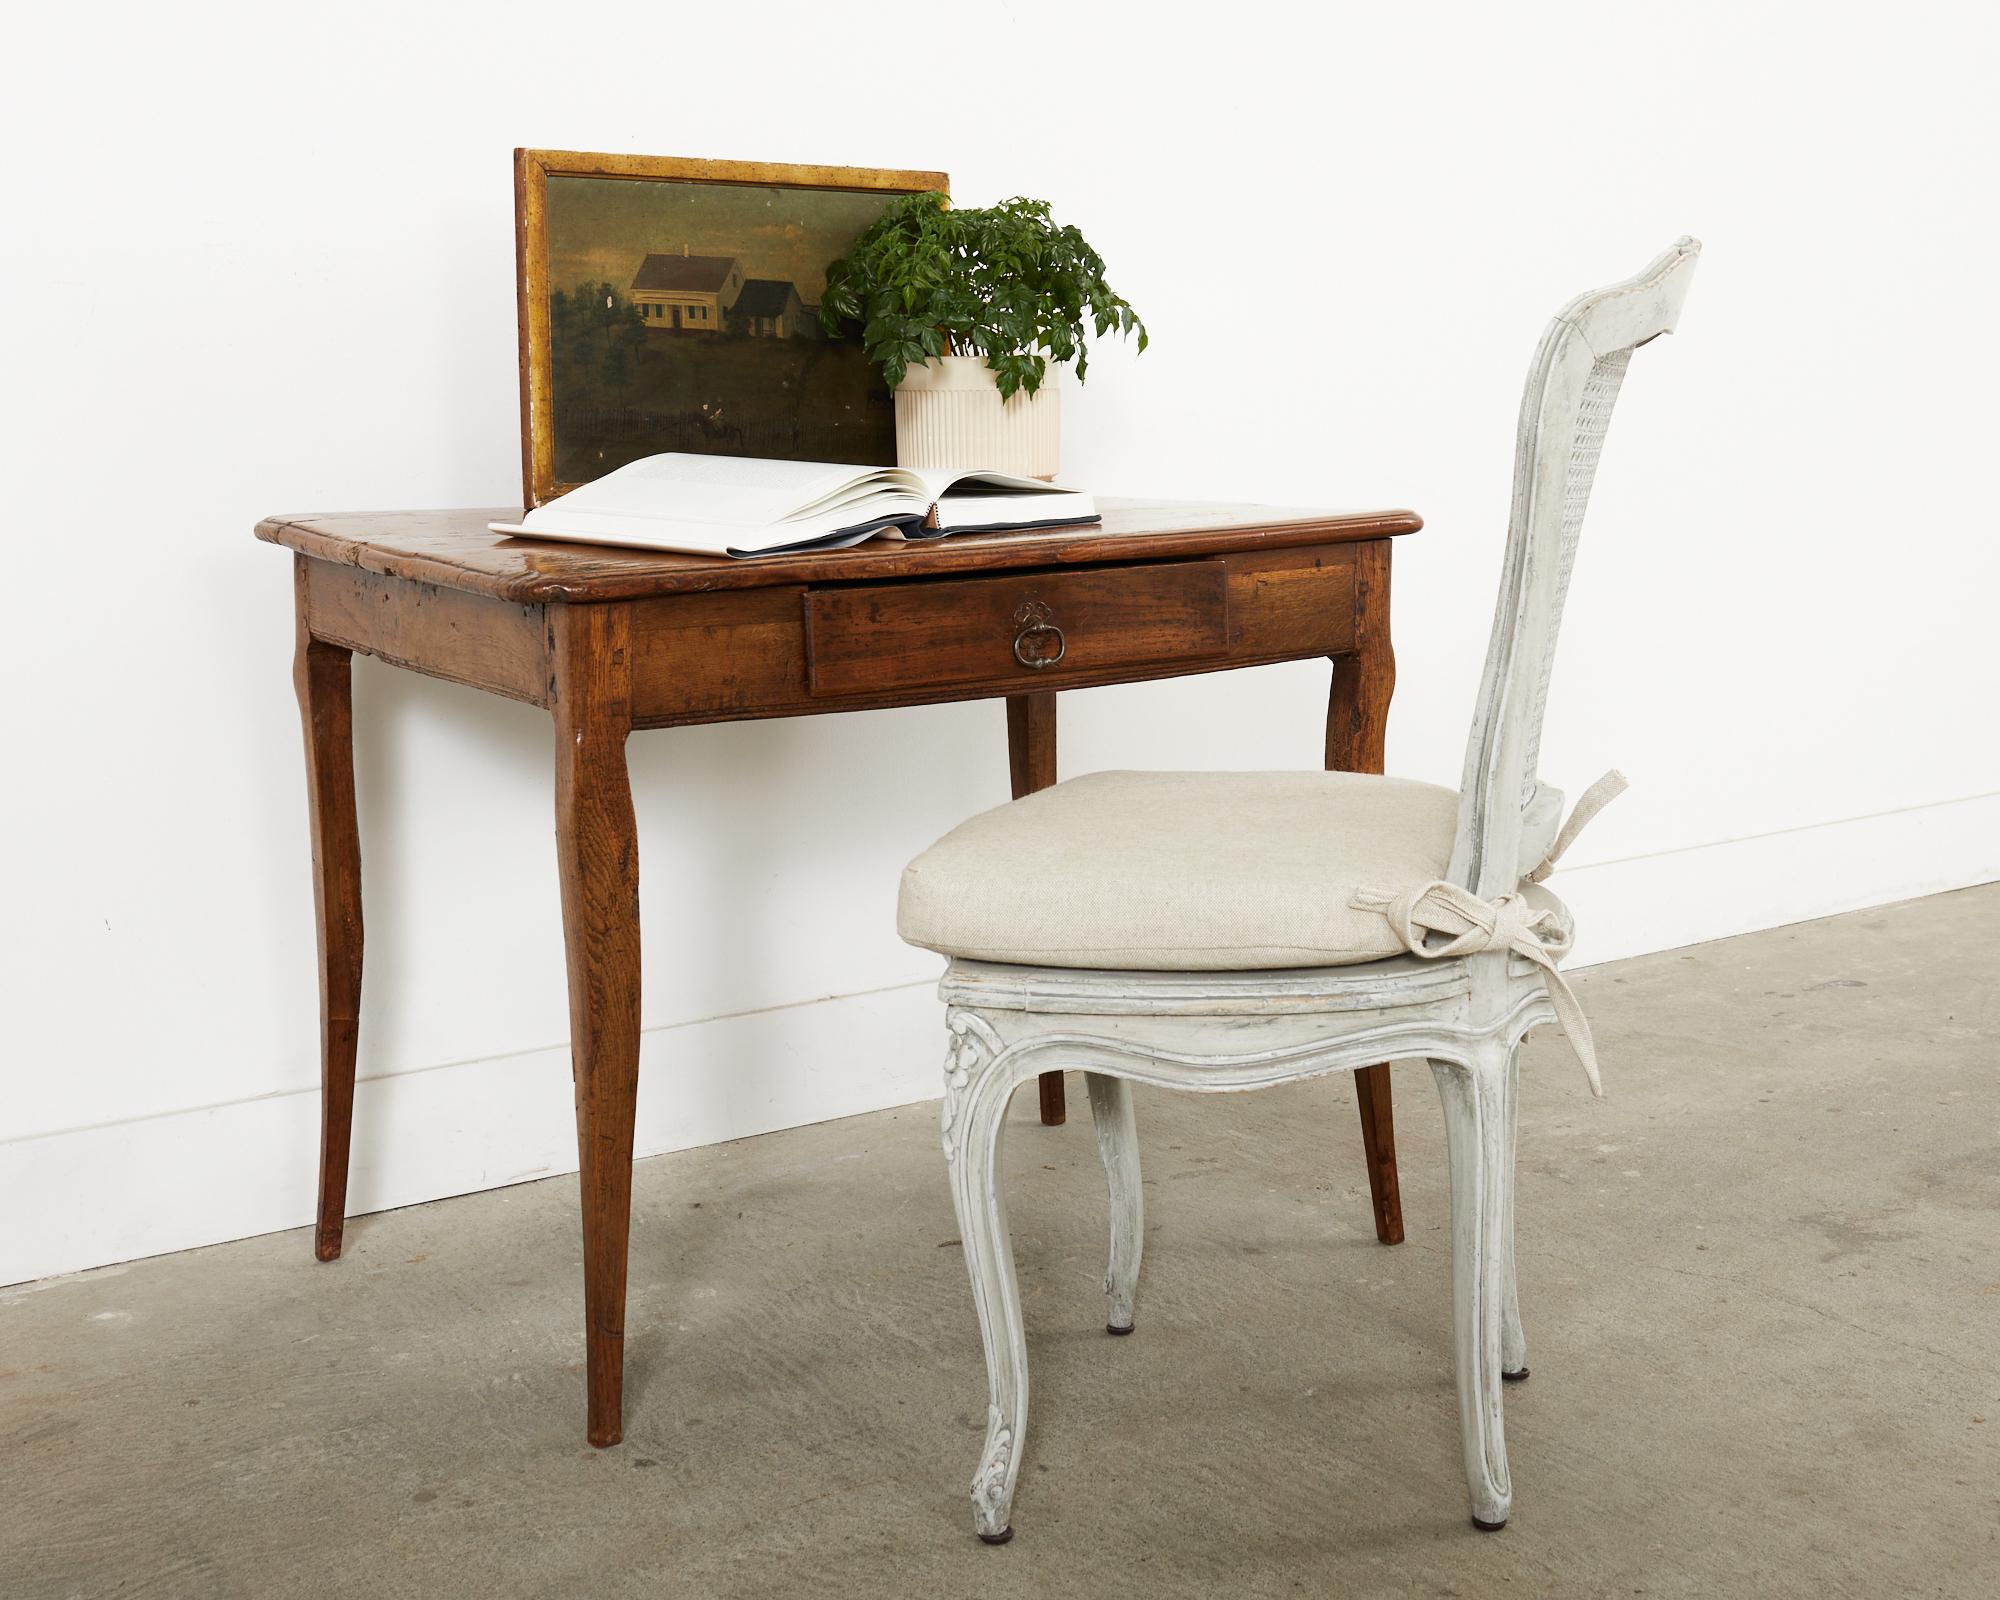 Charmanter und rustikaler Schreibtisch aus dem späten 18. Jahrhundert, handgefertigt aus Obstholz. Dieser in Südfrankreich hergestellte Tisch hat einen skurrilen, charaktervollen Stil mit einer unebenen Platte und einer stark abgenutzten Patina. Der